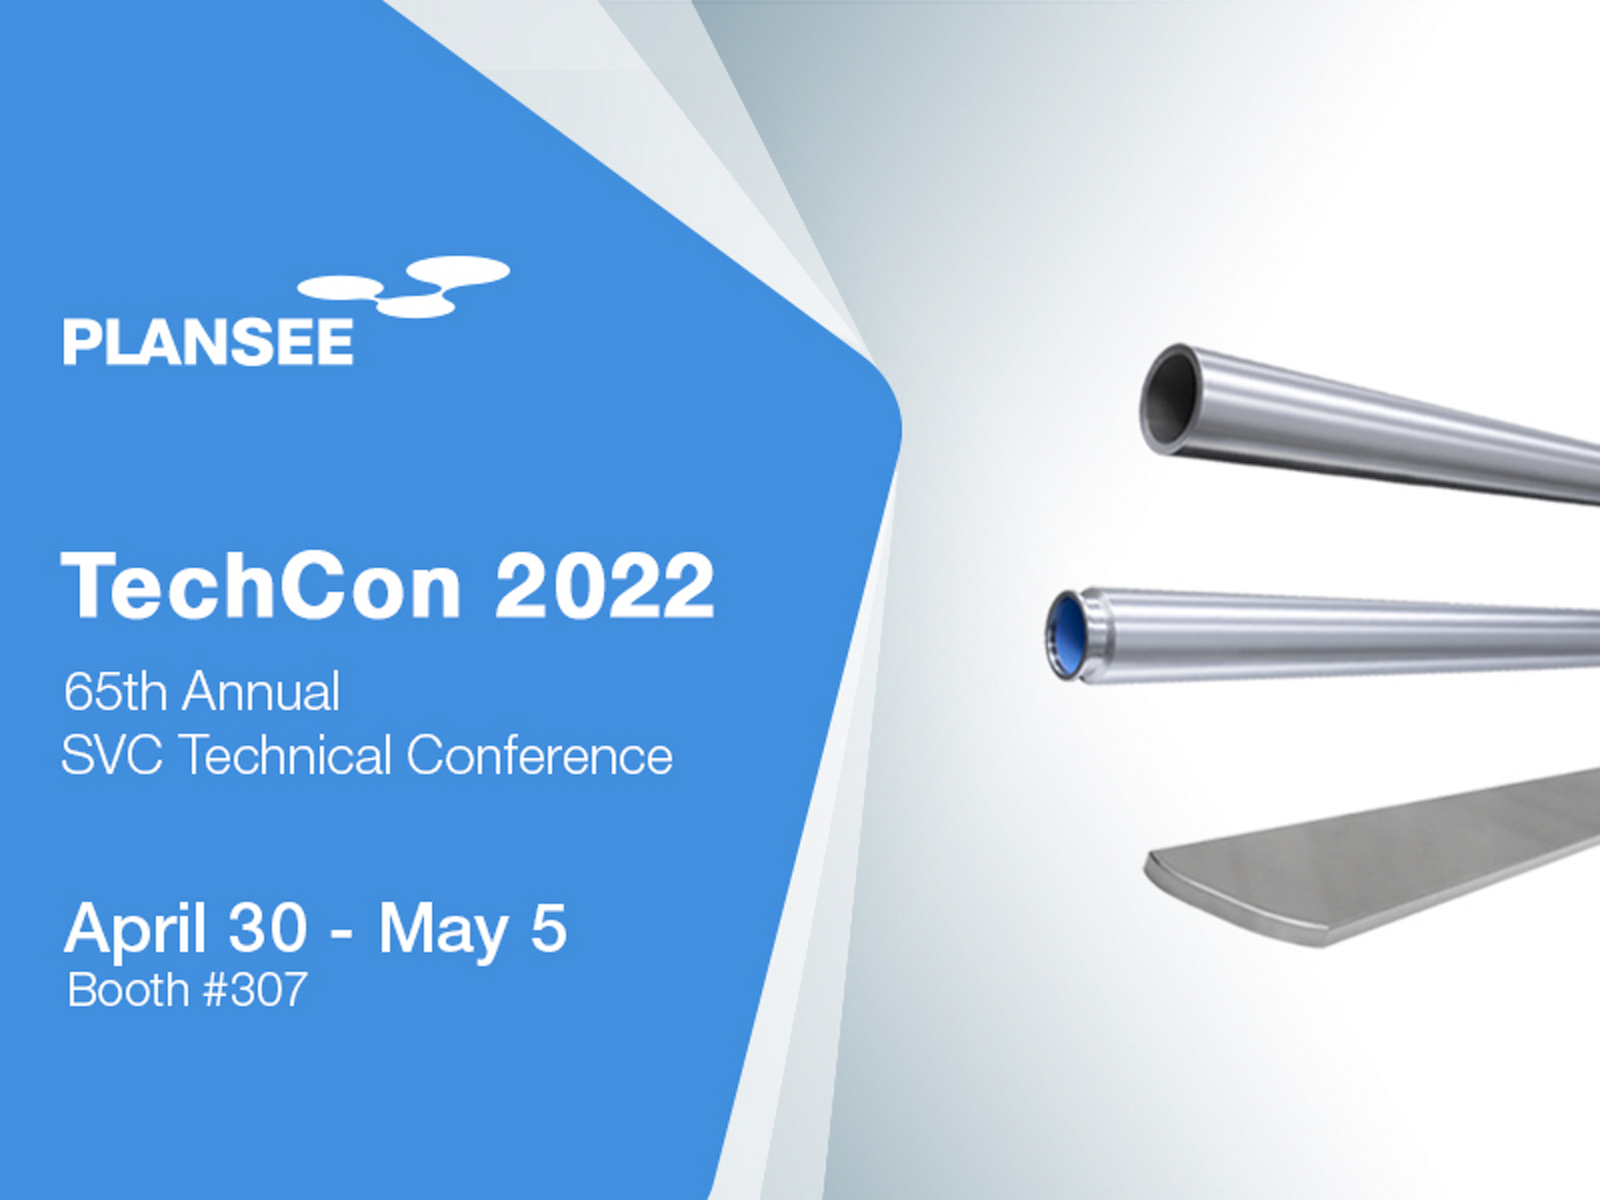 SVC TechCon 2022